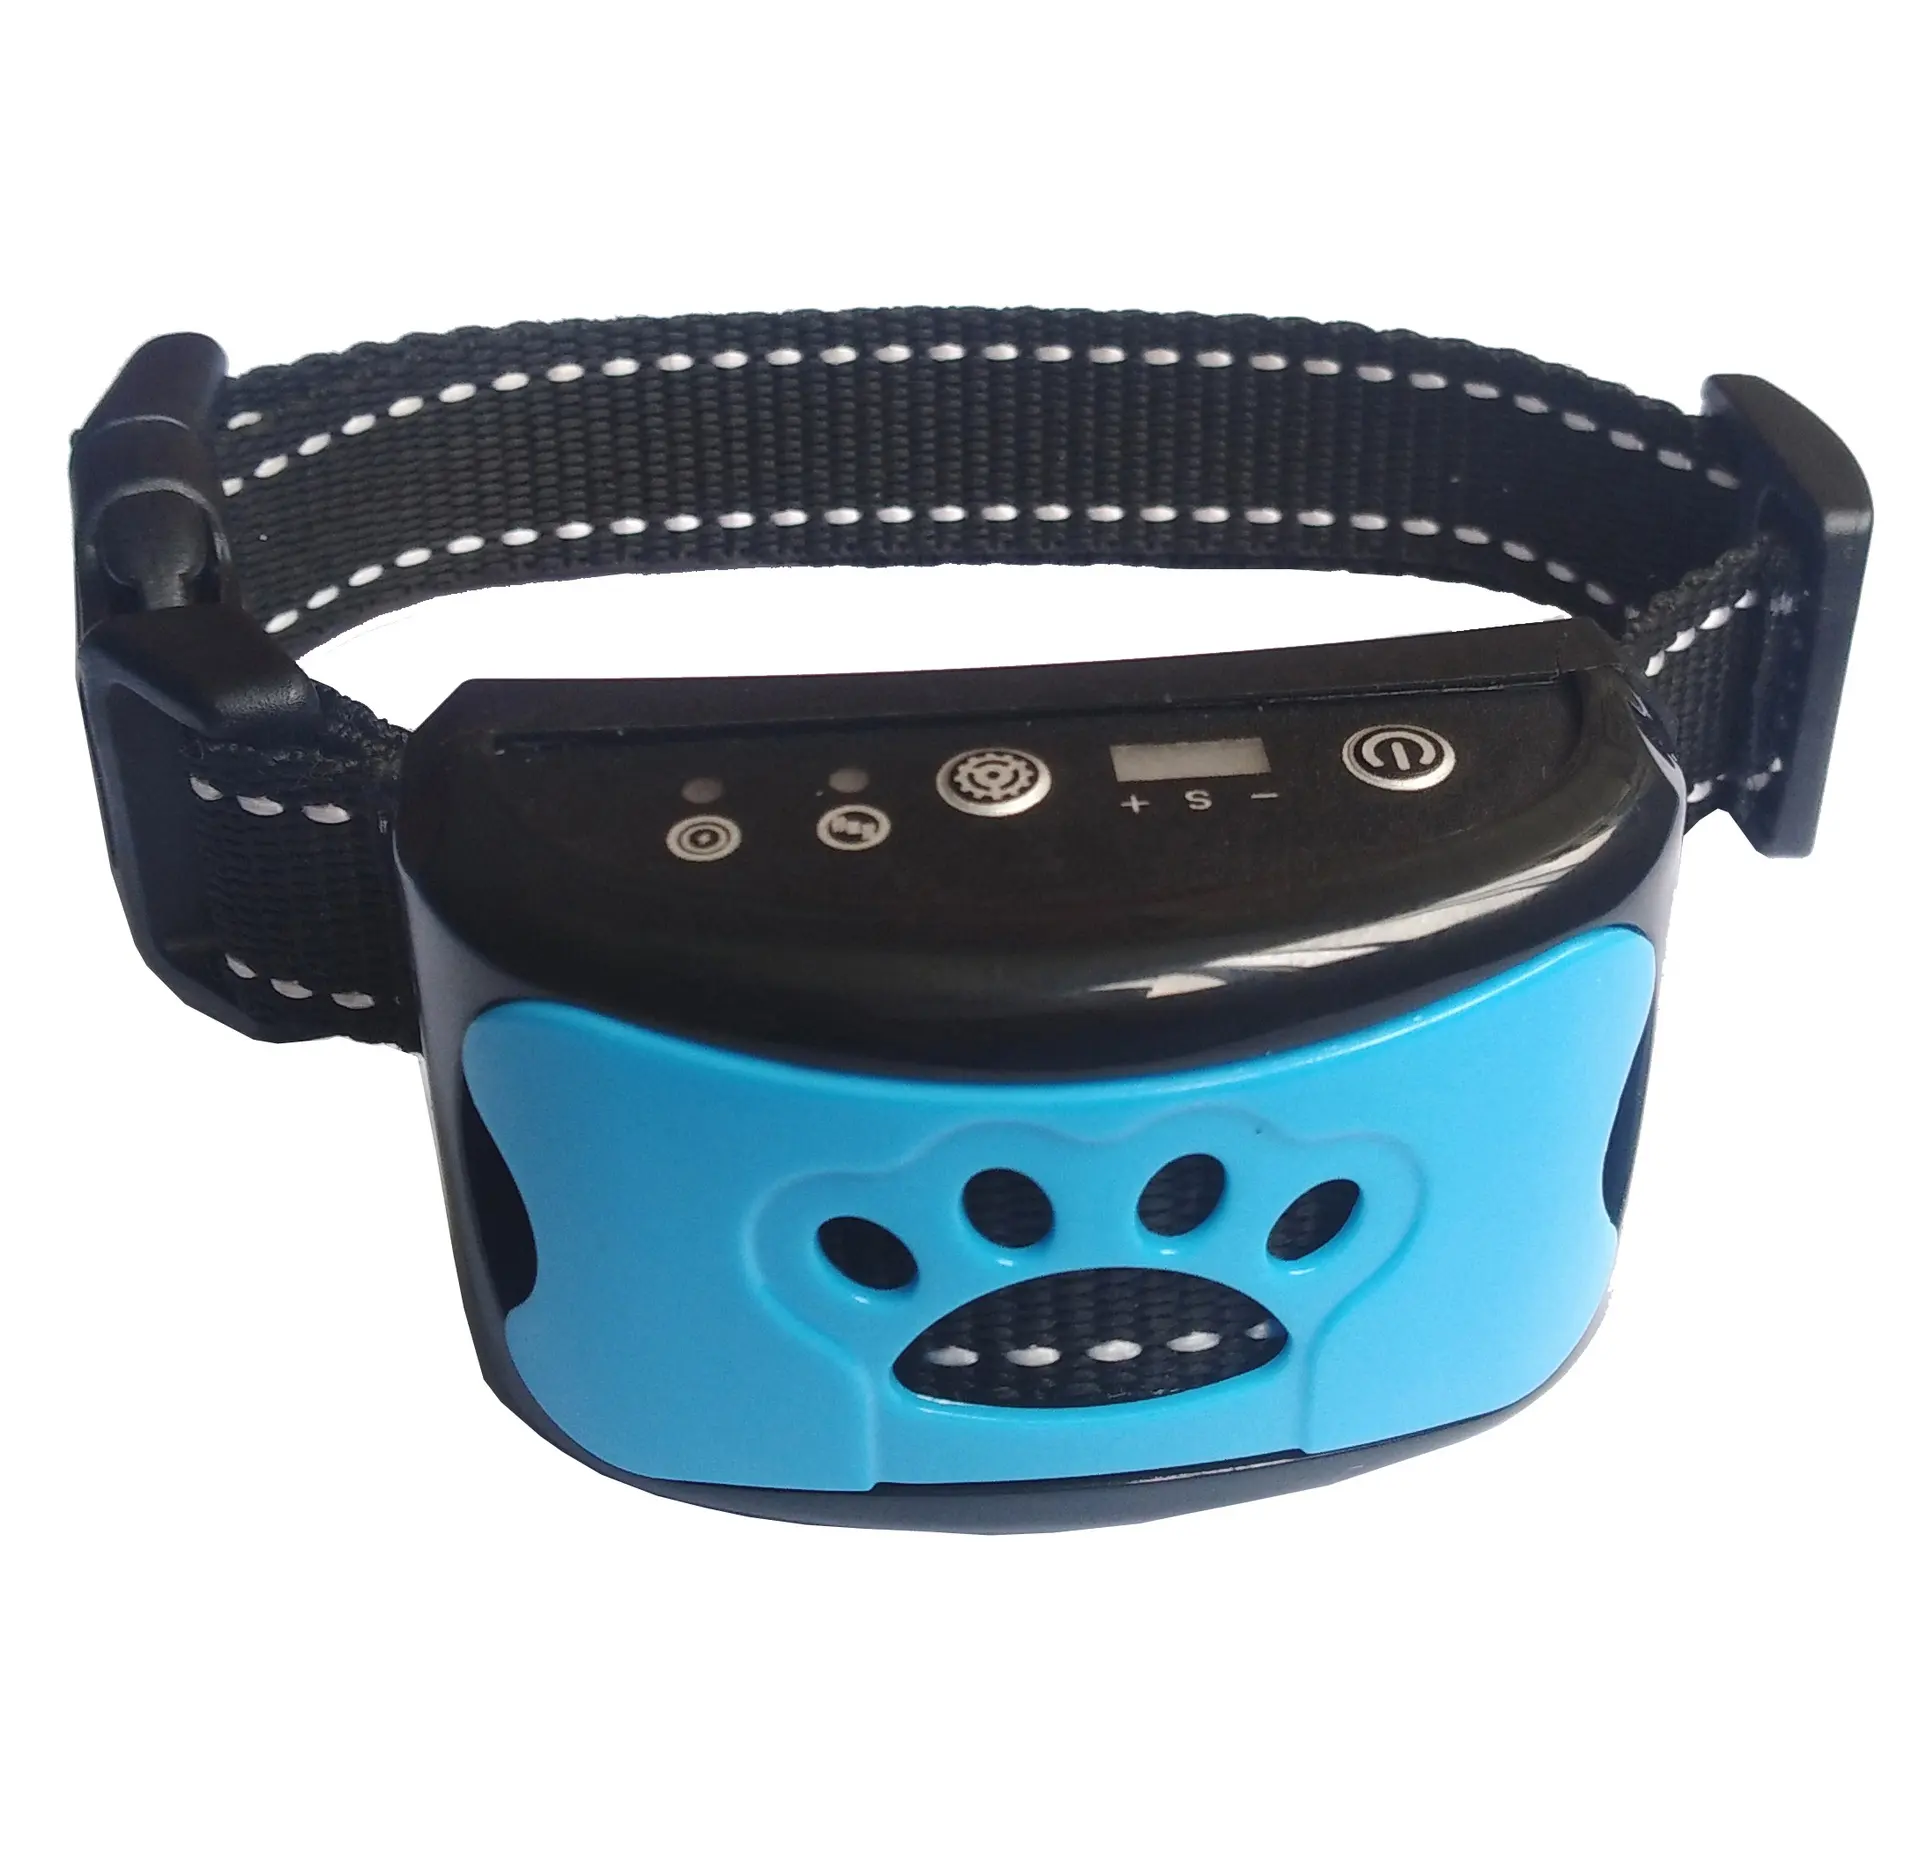 Collar de entrenamiento para perros, dispositivo de Control de ladridos con vibración, antiladridos, activado por voz